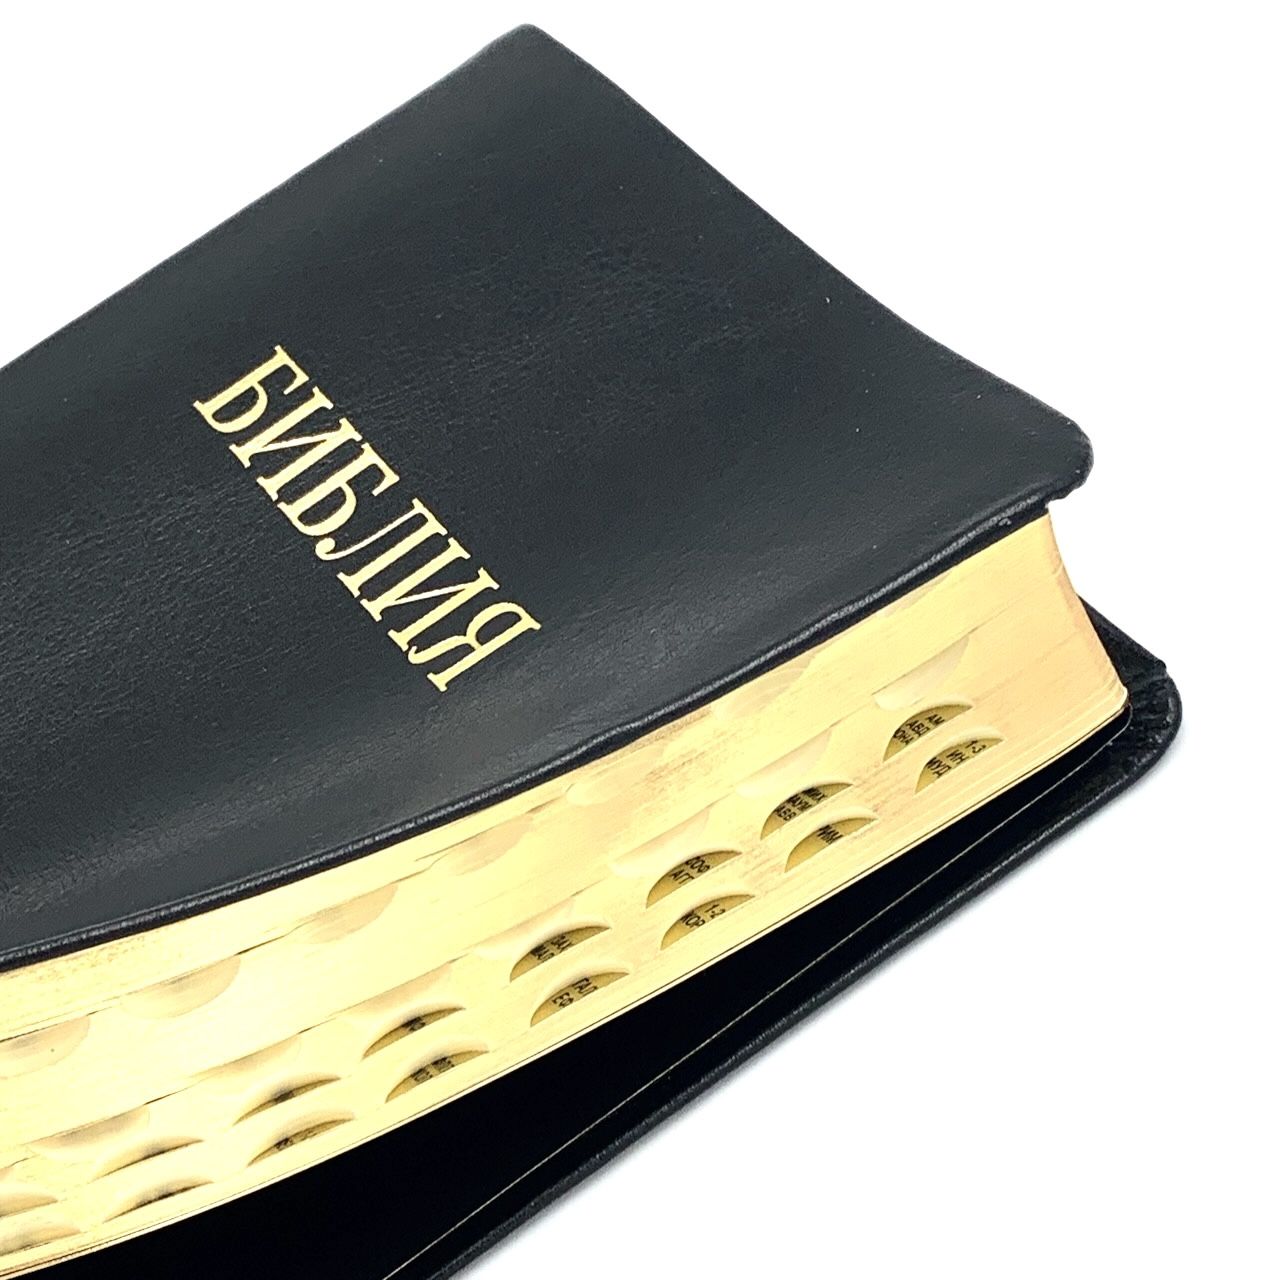 Библия 055ti код 11546  кожаный переплет с индексами , цвет черный, надпись золотом Библия, средний формат, 145*205 мм, парал. места по центру страницы, кремовые страницы, золотой обрез,  крупный шрифт